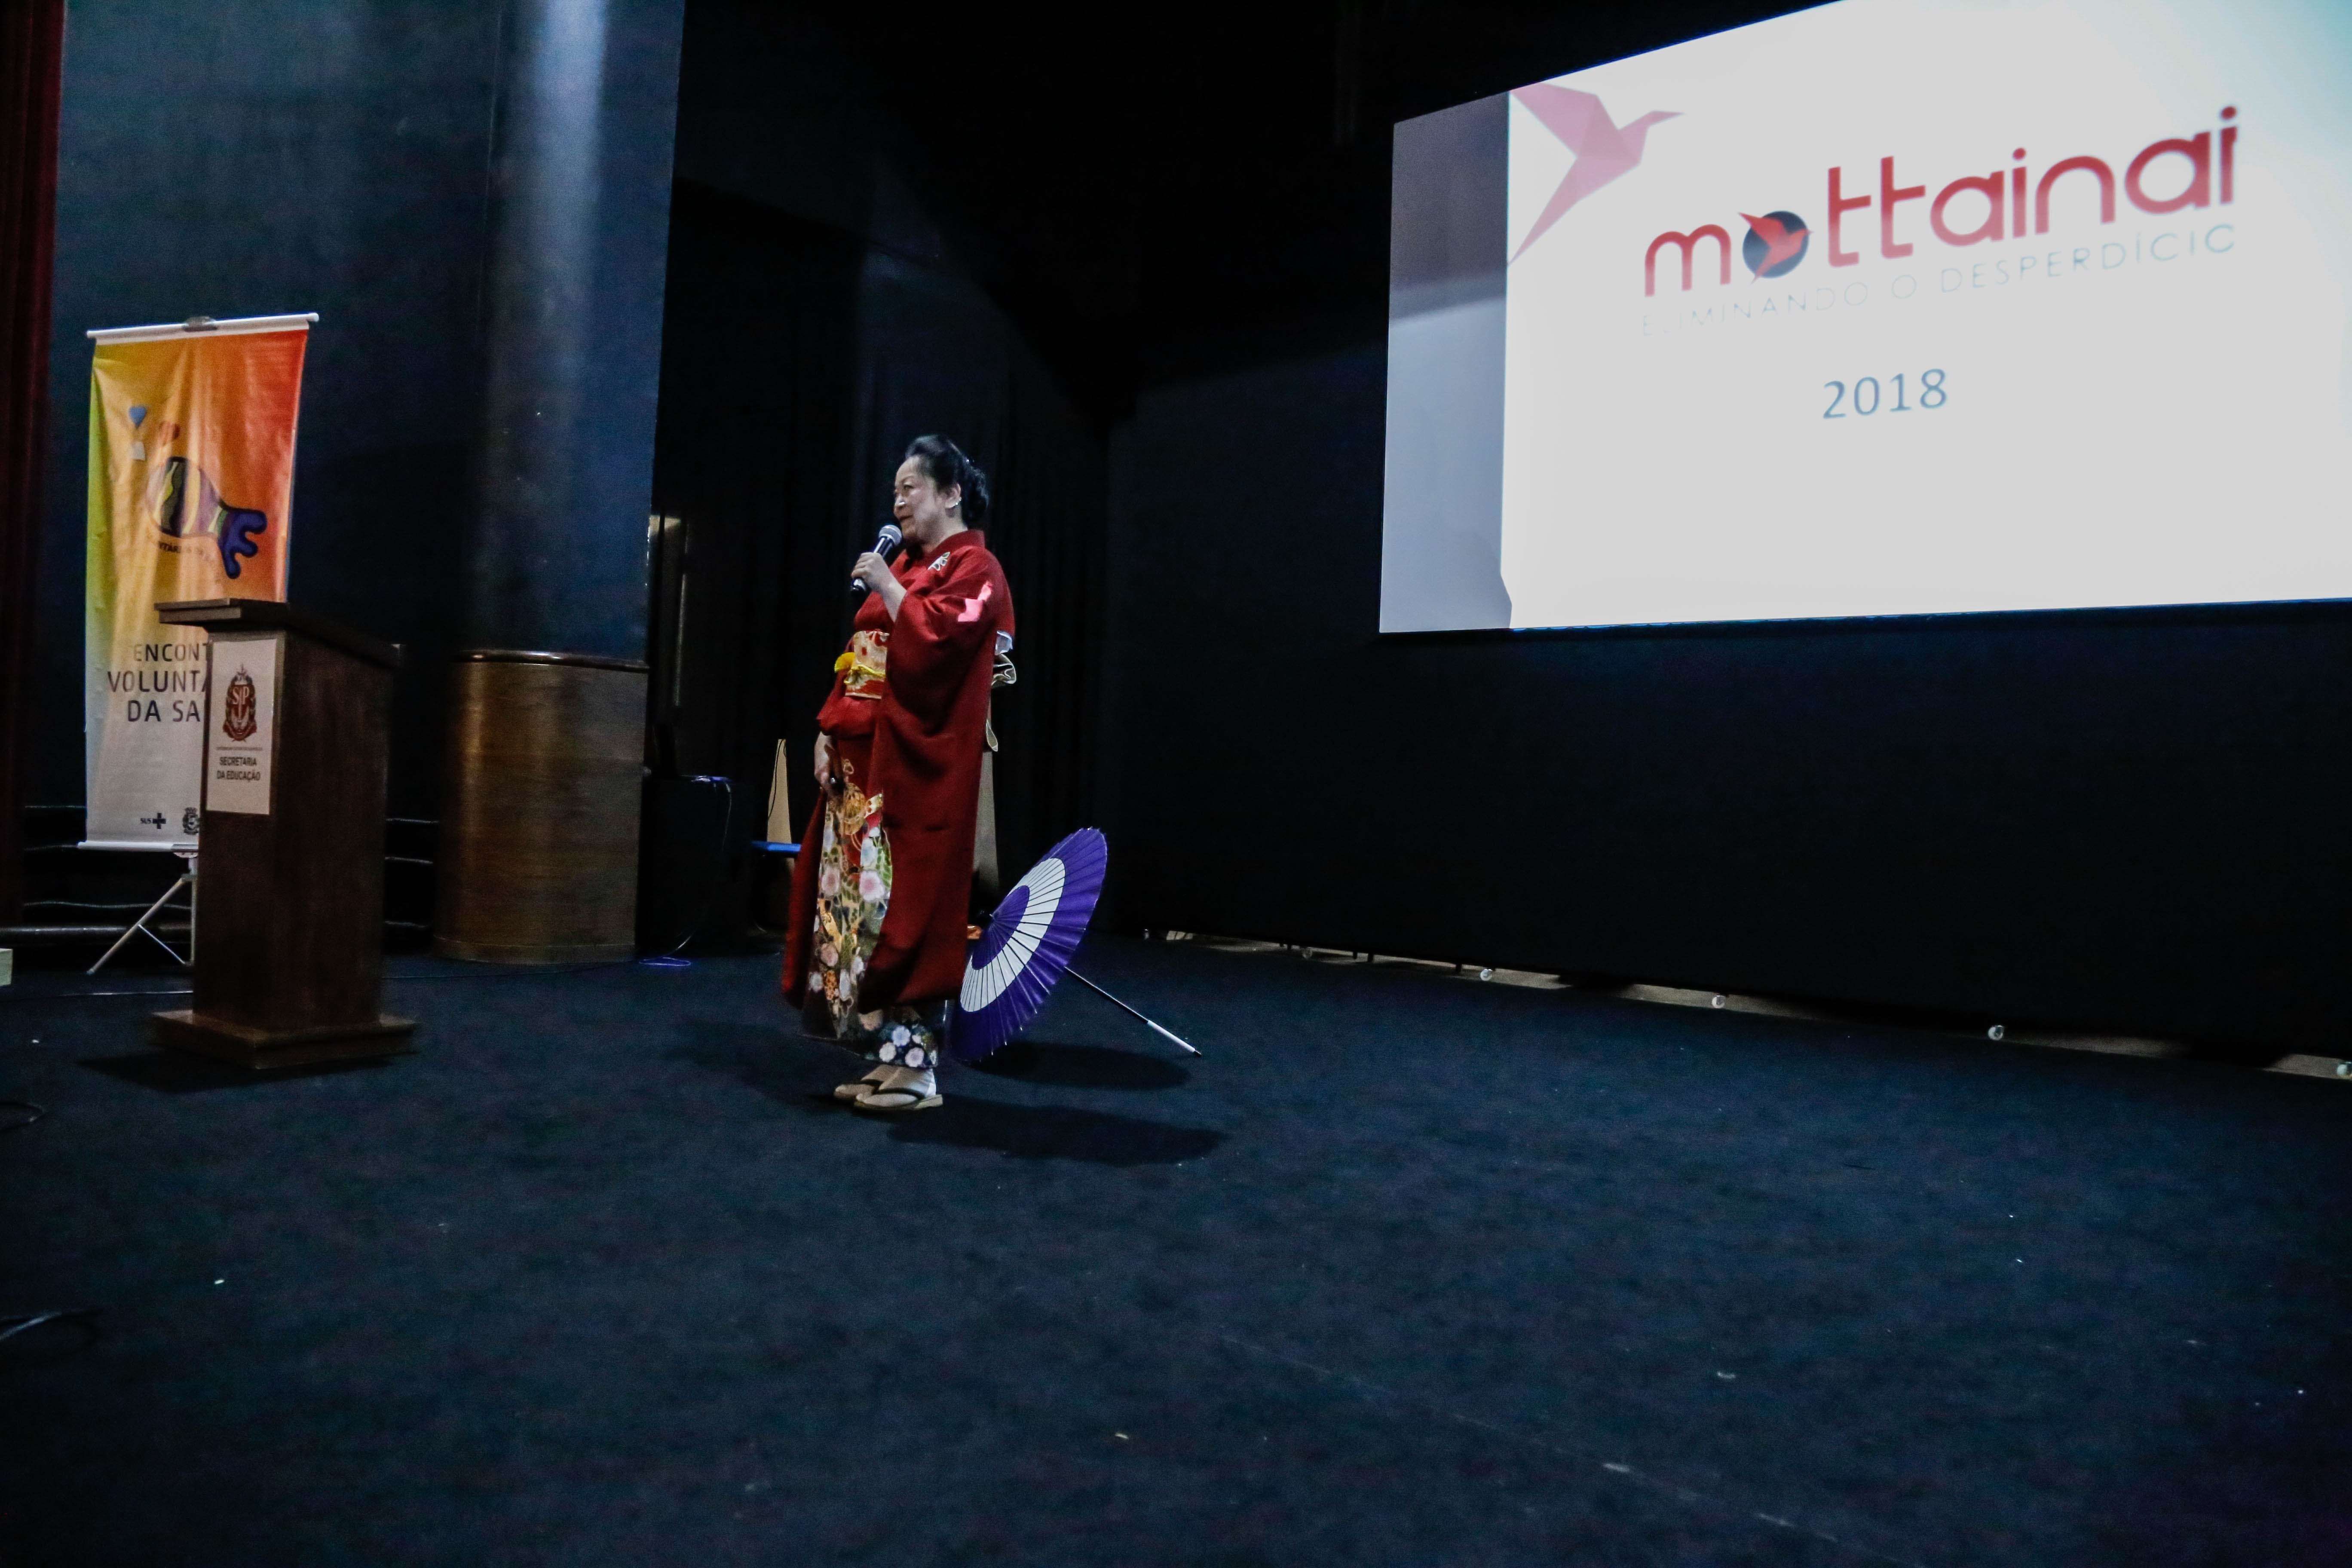 Lilian Tiemi Yamashita está no meio do palco fazendo sua palestra. Ao seu lado, um guarda-chuva colorido está no chão. No fundo do palco está a palavra Mottainai no telão.